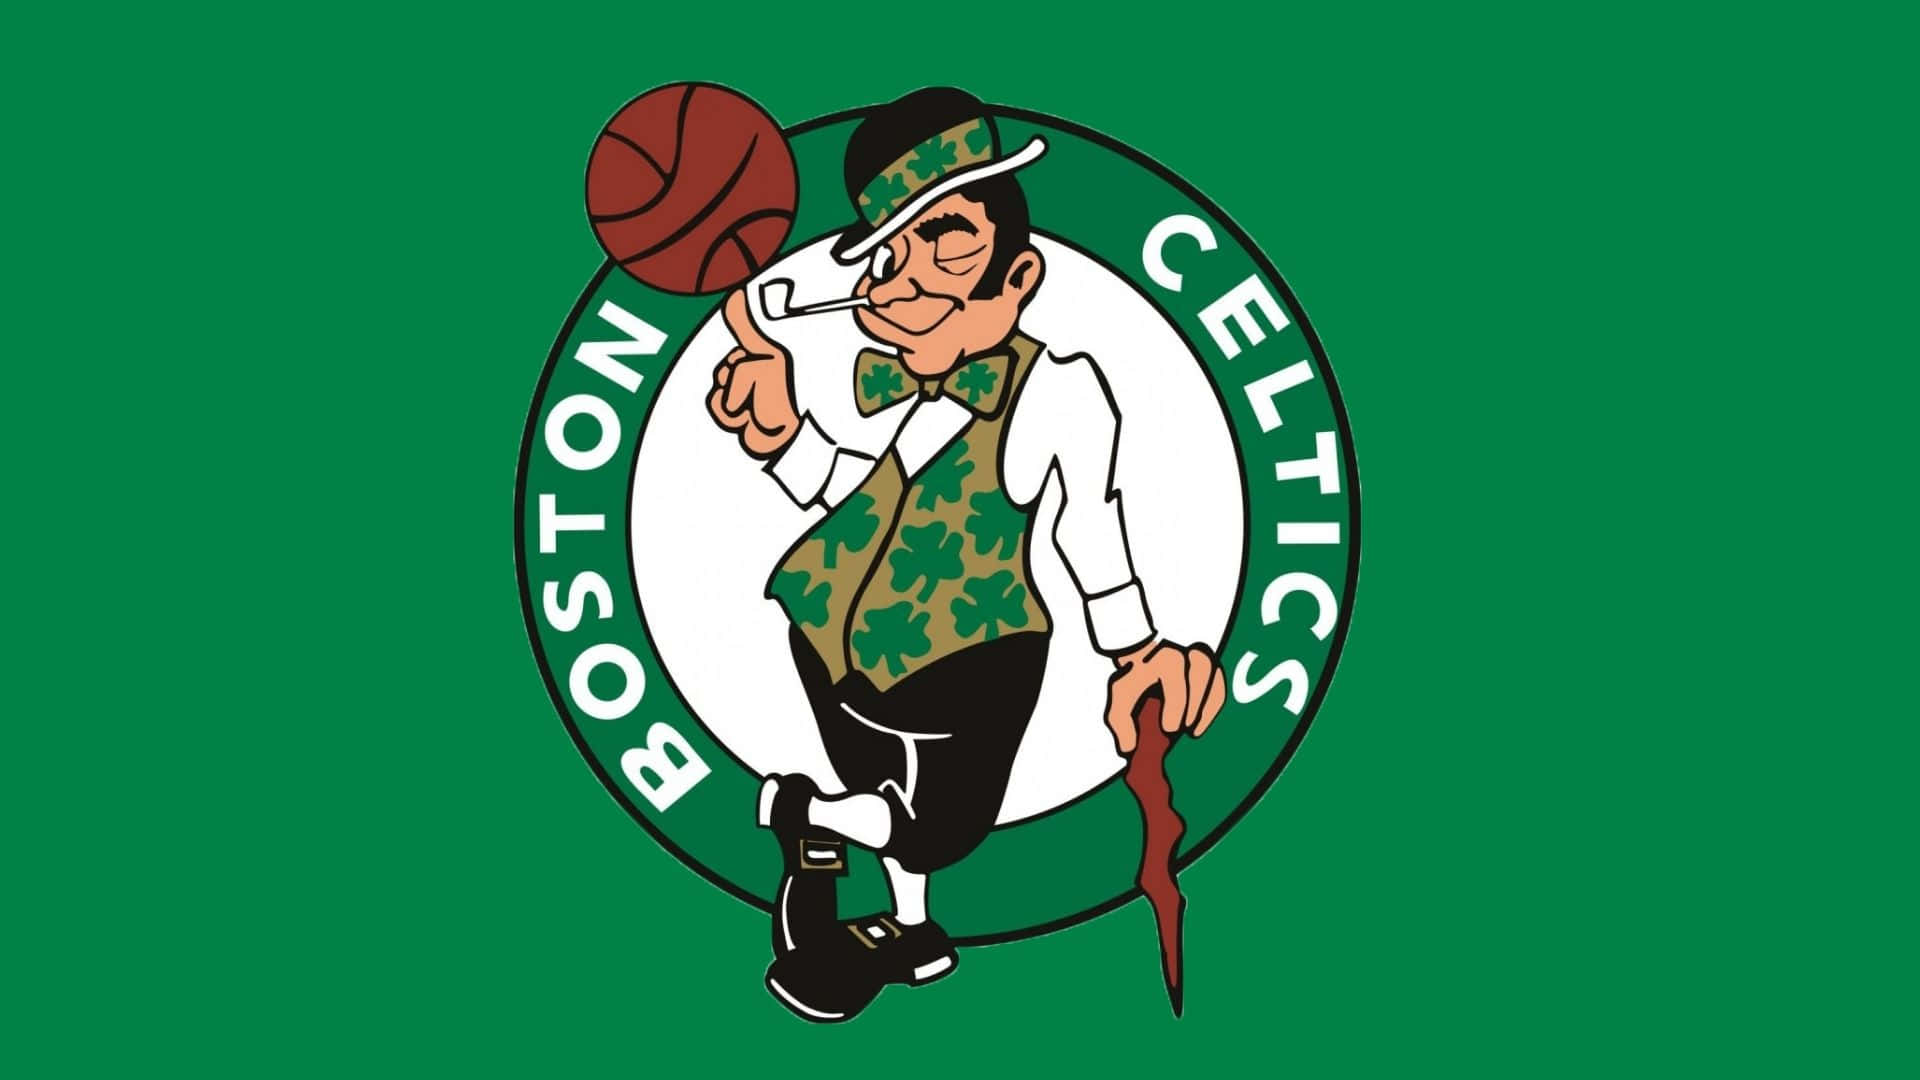 Illogo Iconico Dei Celtics È Immediatamente Riconoscibile. Sfondo